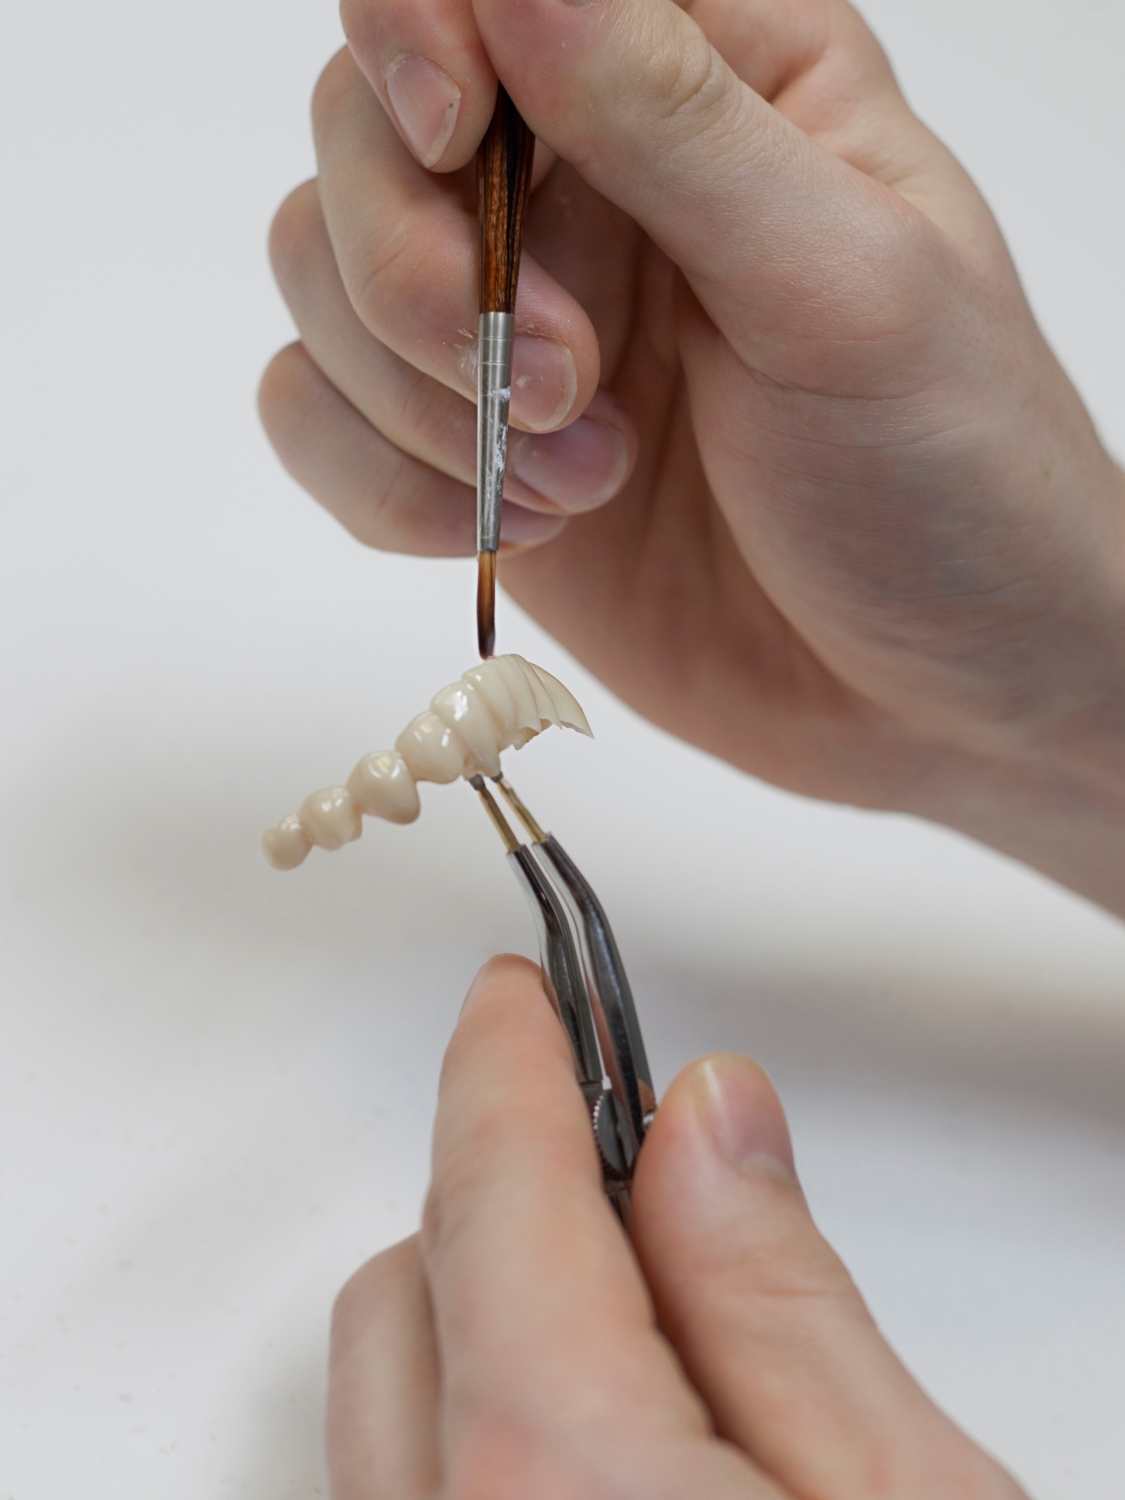 Keramisk tannbro fremstilt av tannlegen på egen lab